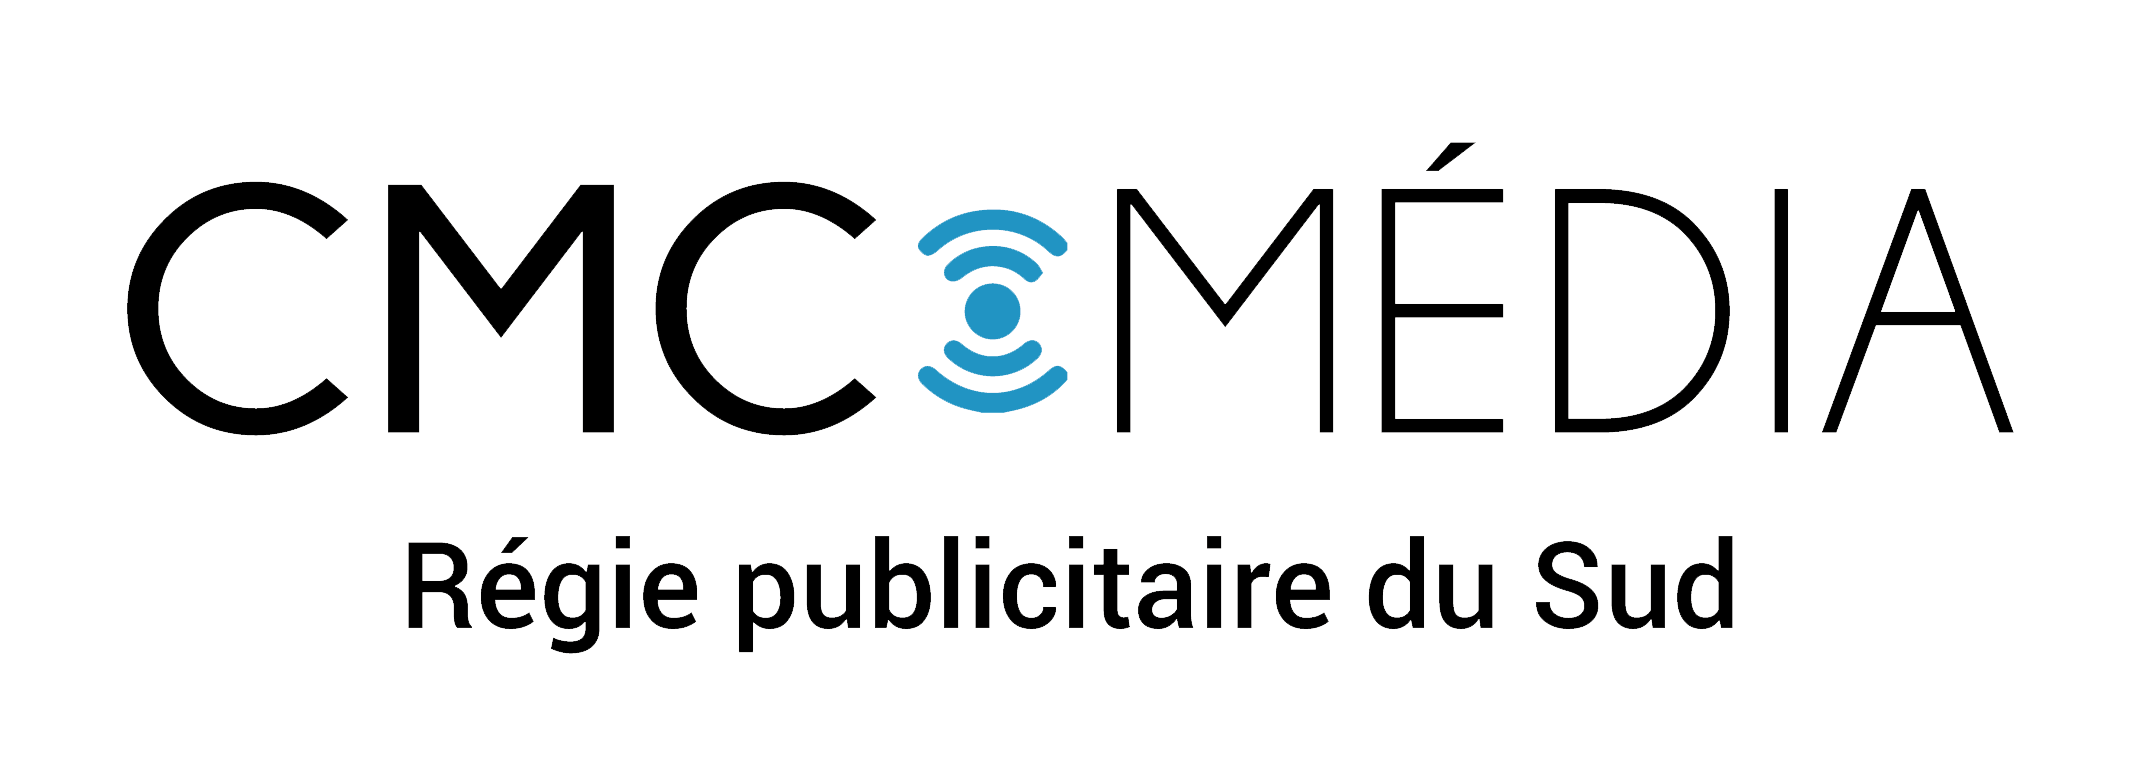 cmc-media-logo-declinaison_Plan de travail 1 copie 9-1.png (72 KB)